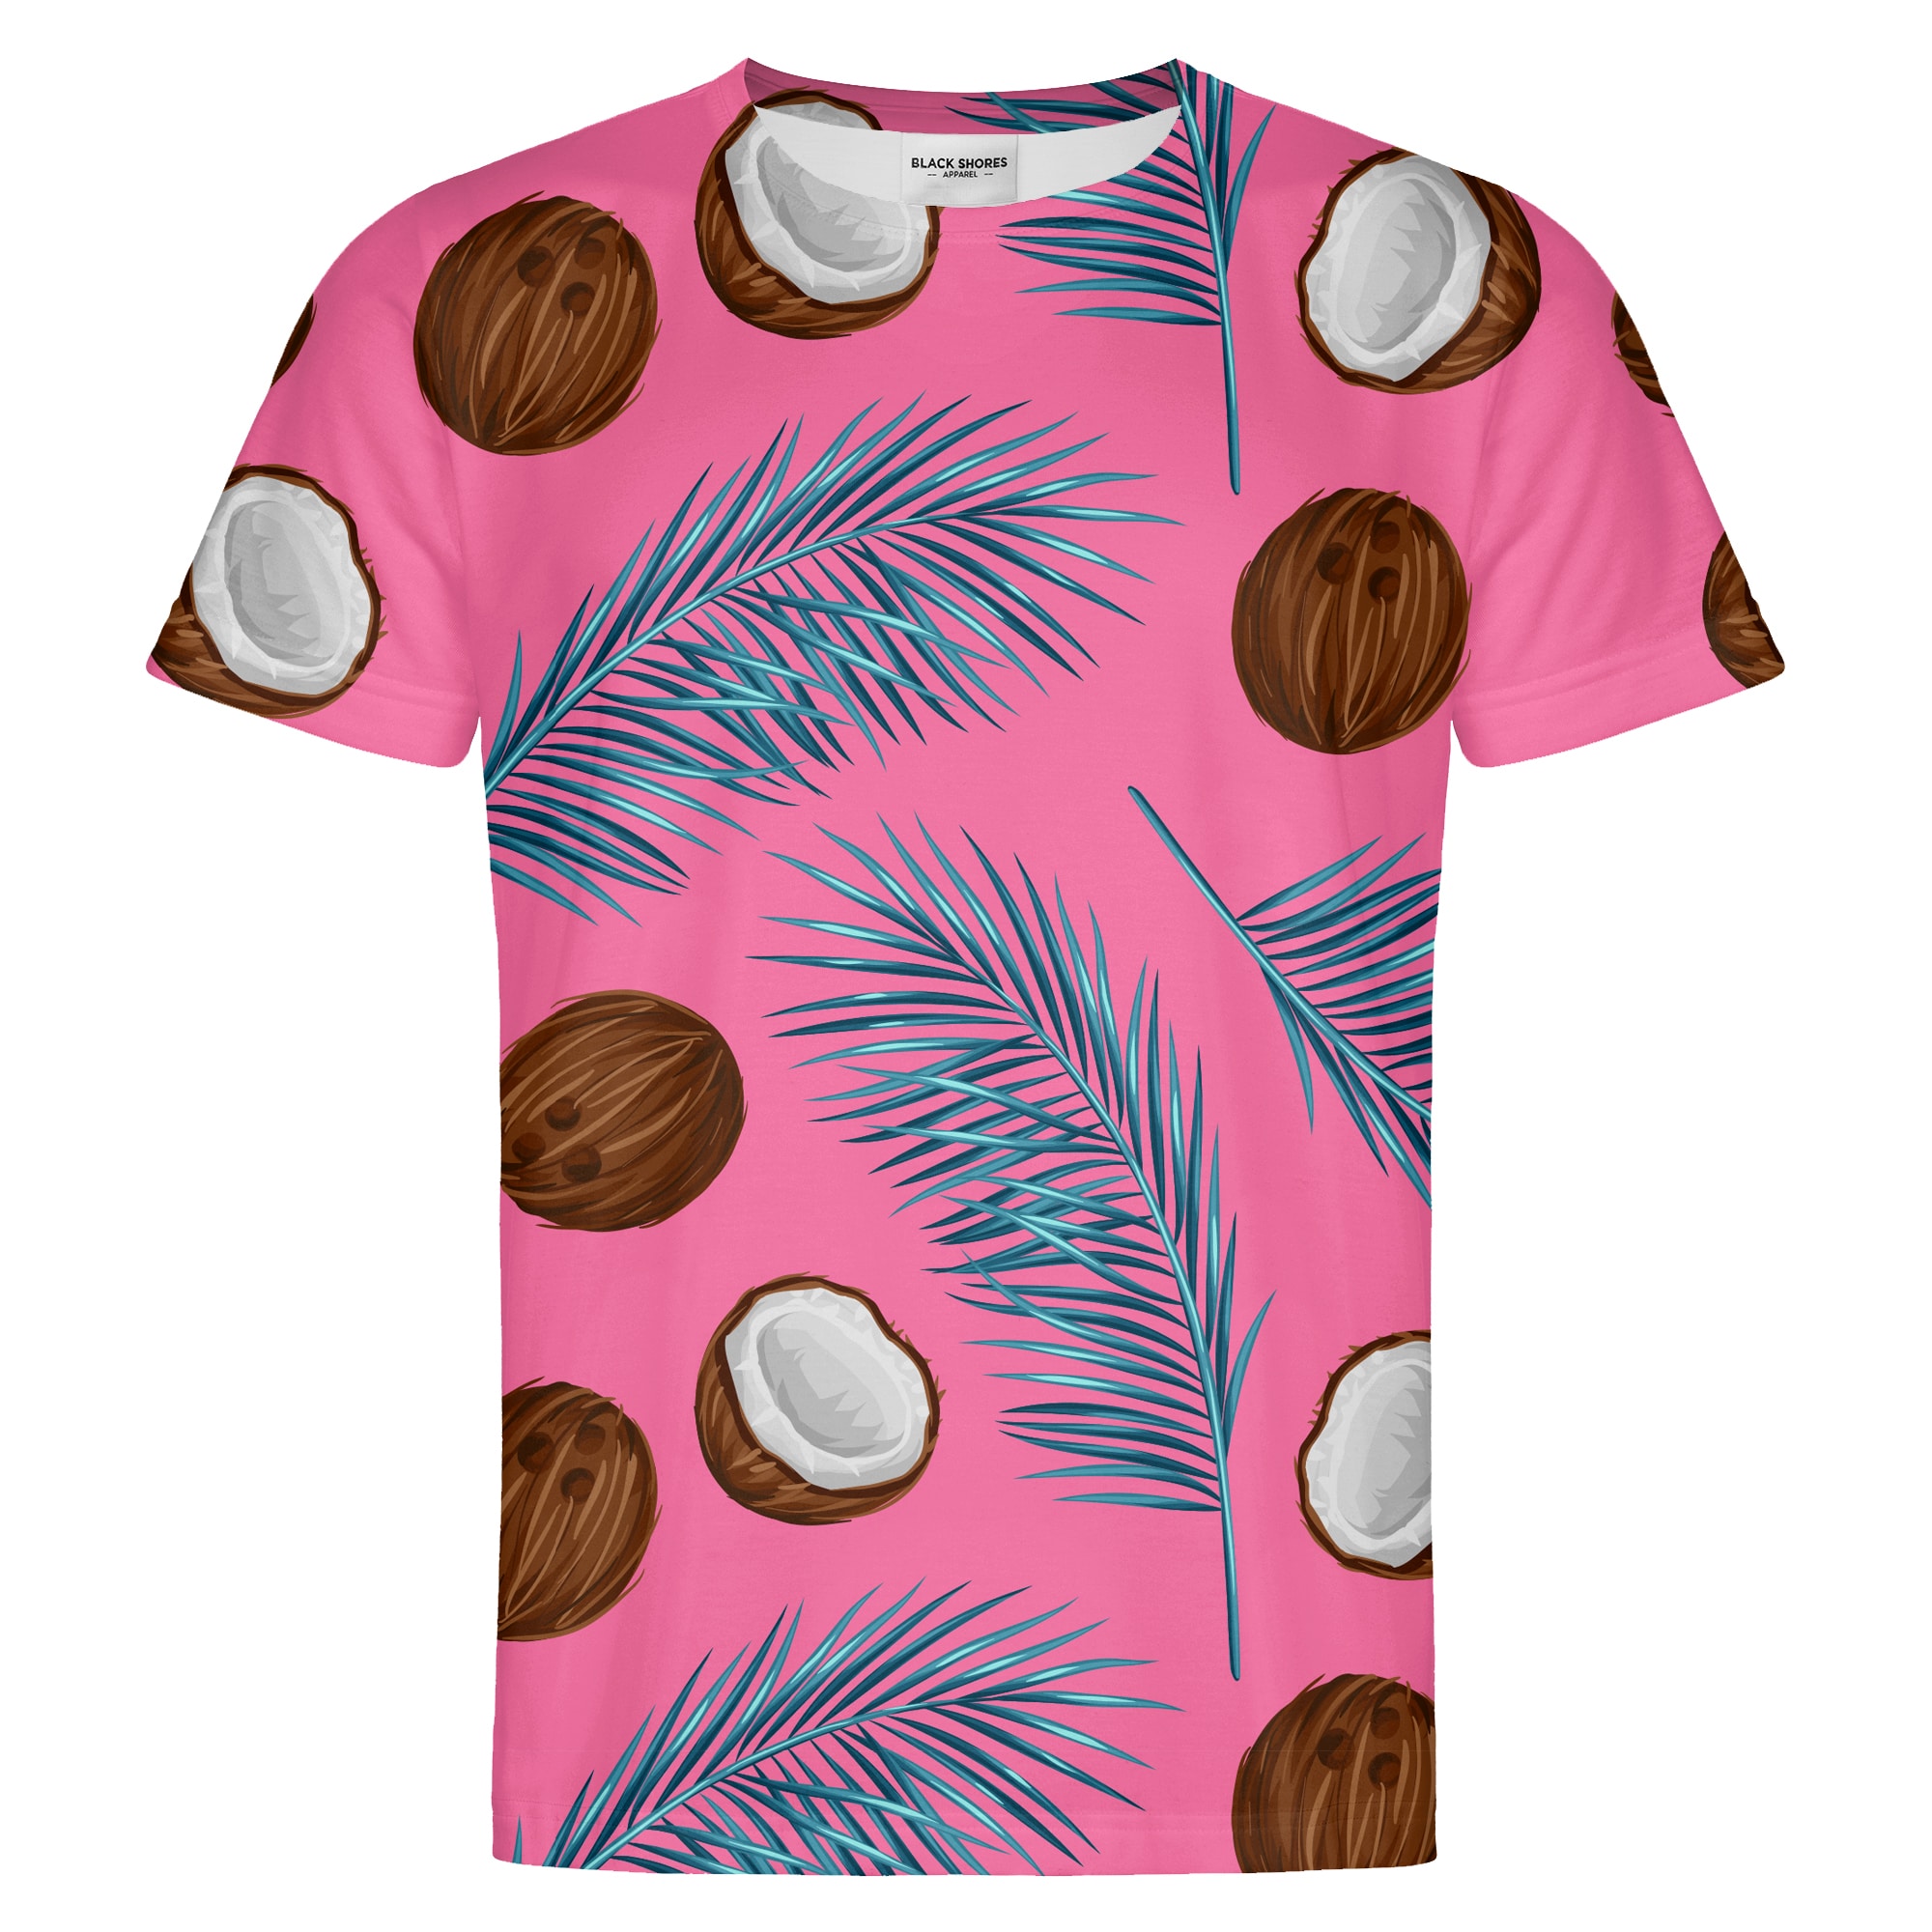 Coconuts T-shirt – Black Shores - XS